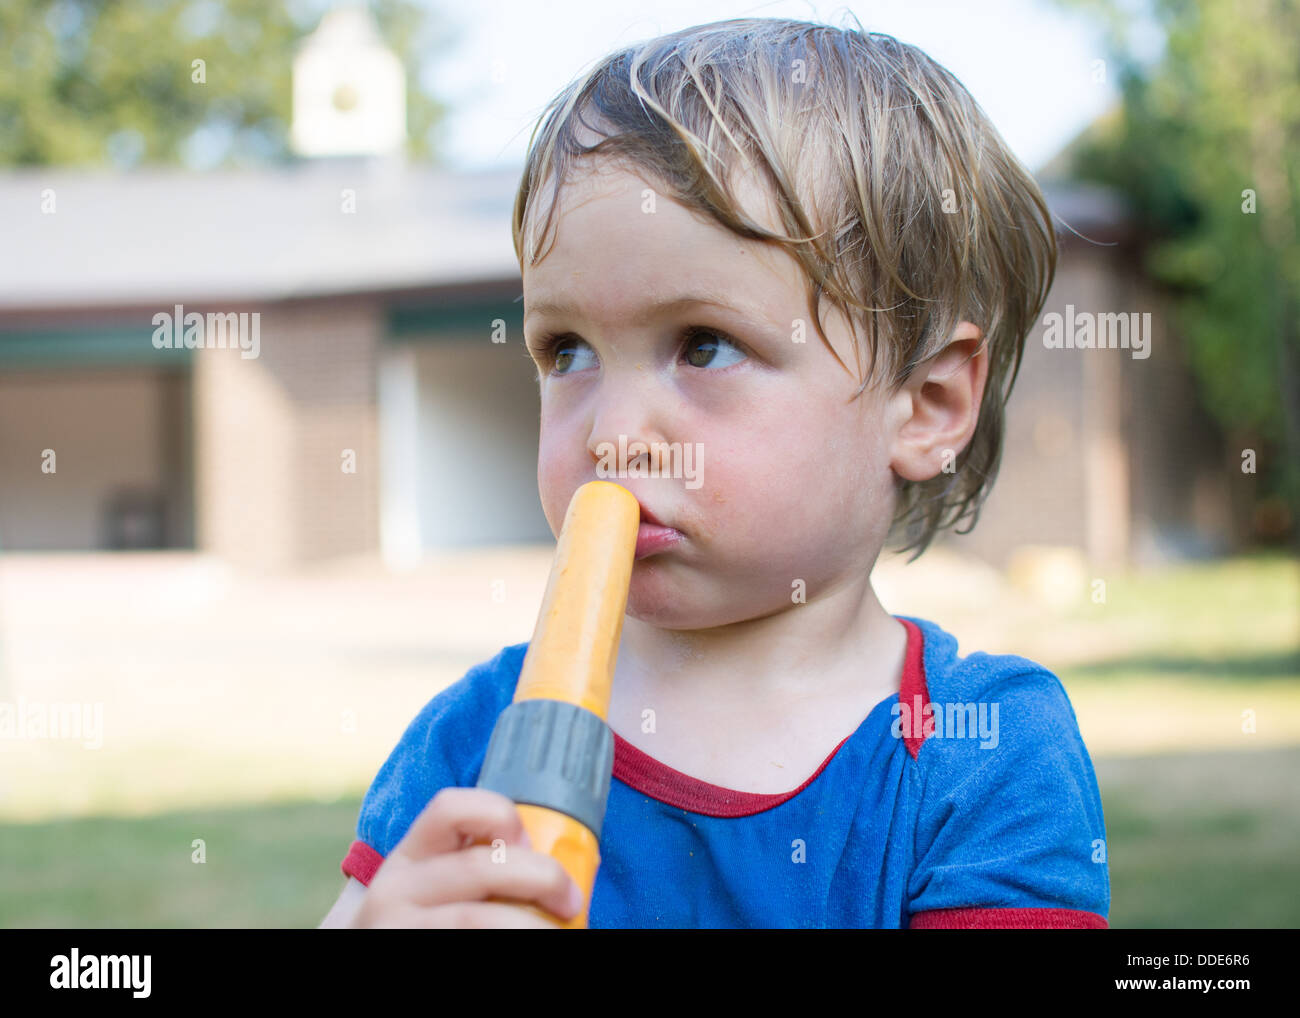 Toddler boy with garden hose Stock Photo